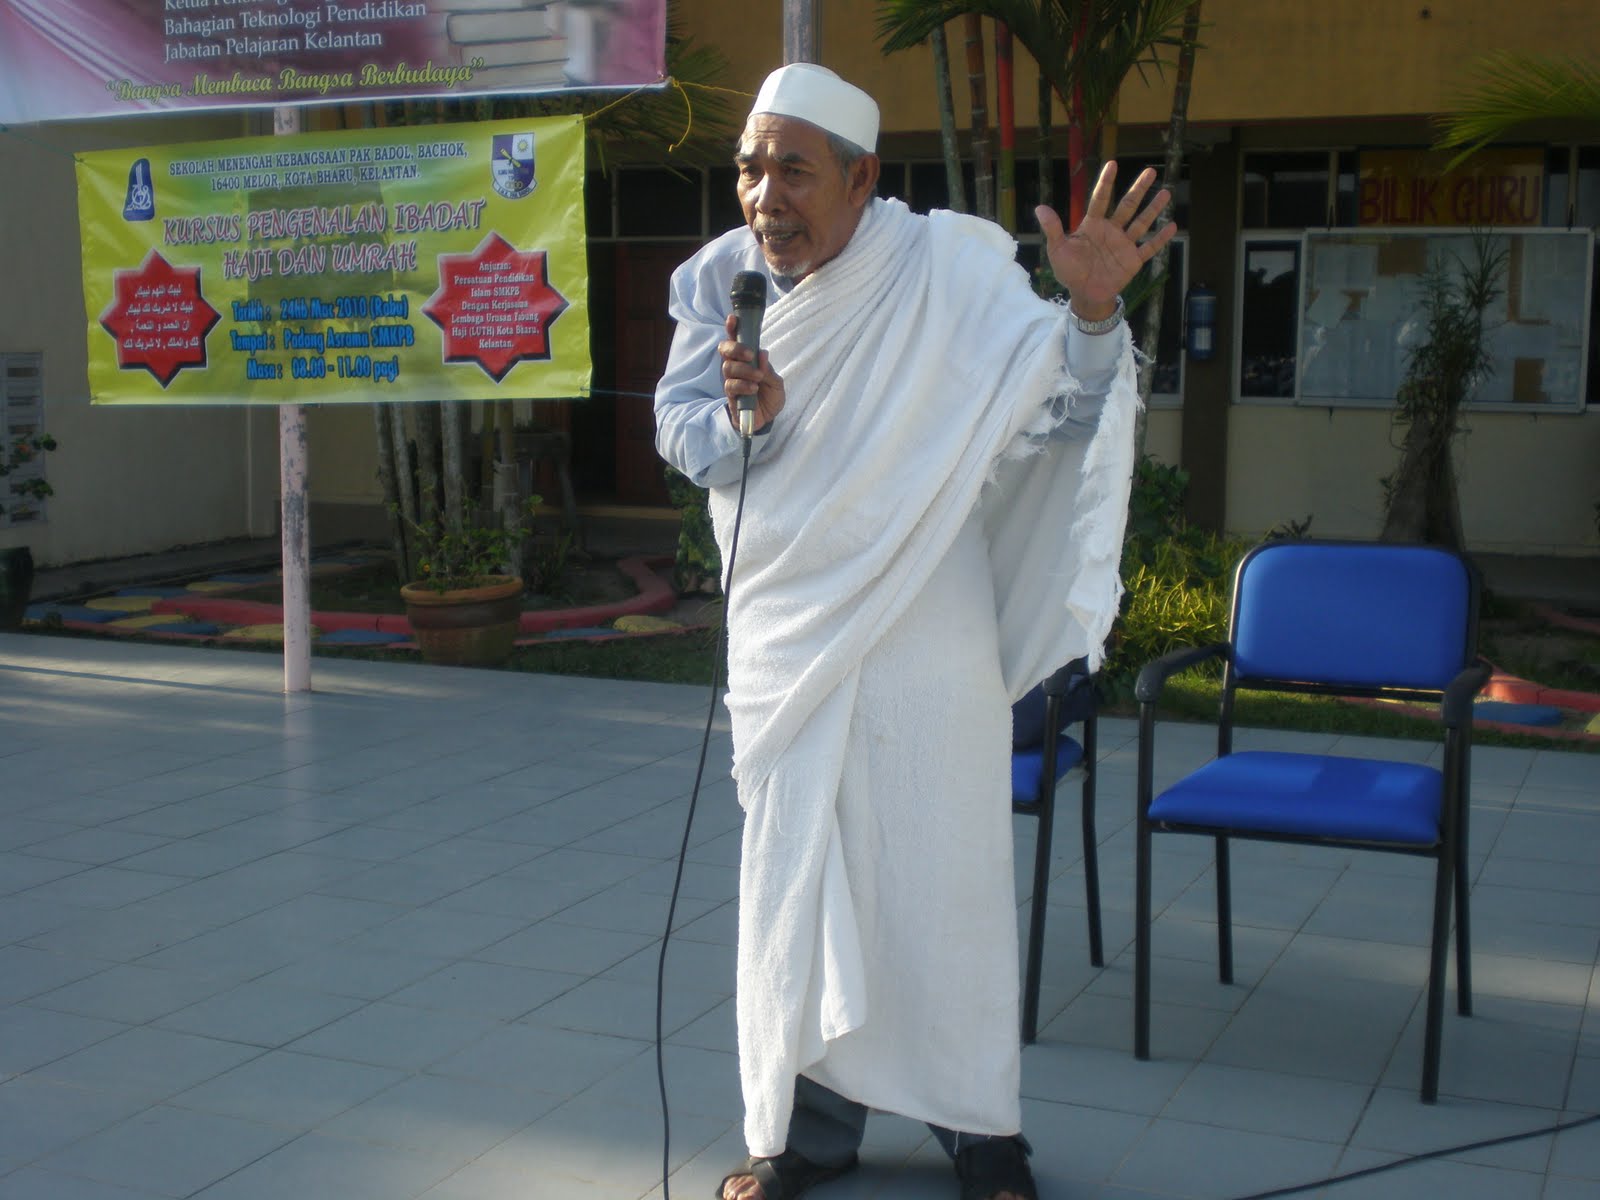 Panitia Pendidikan Islam Darul Naim: September 2010